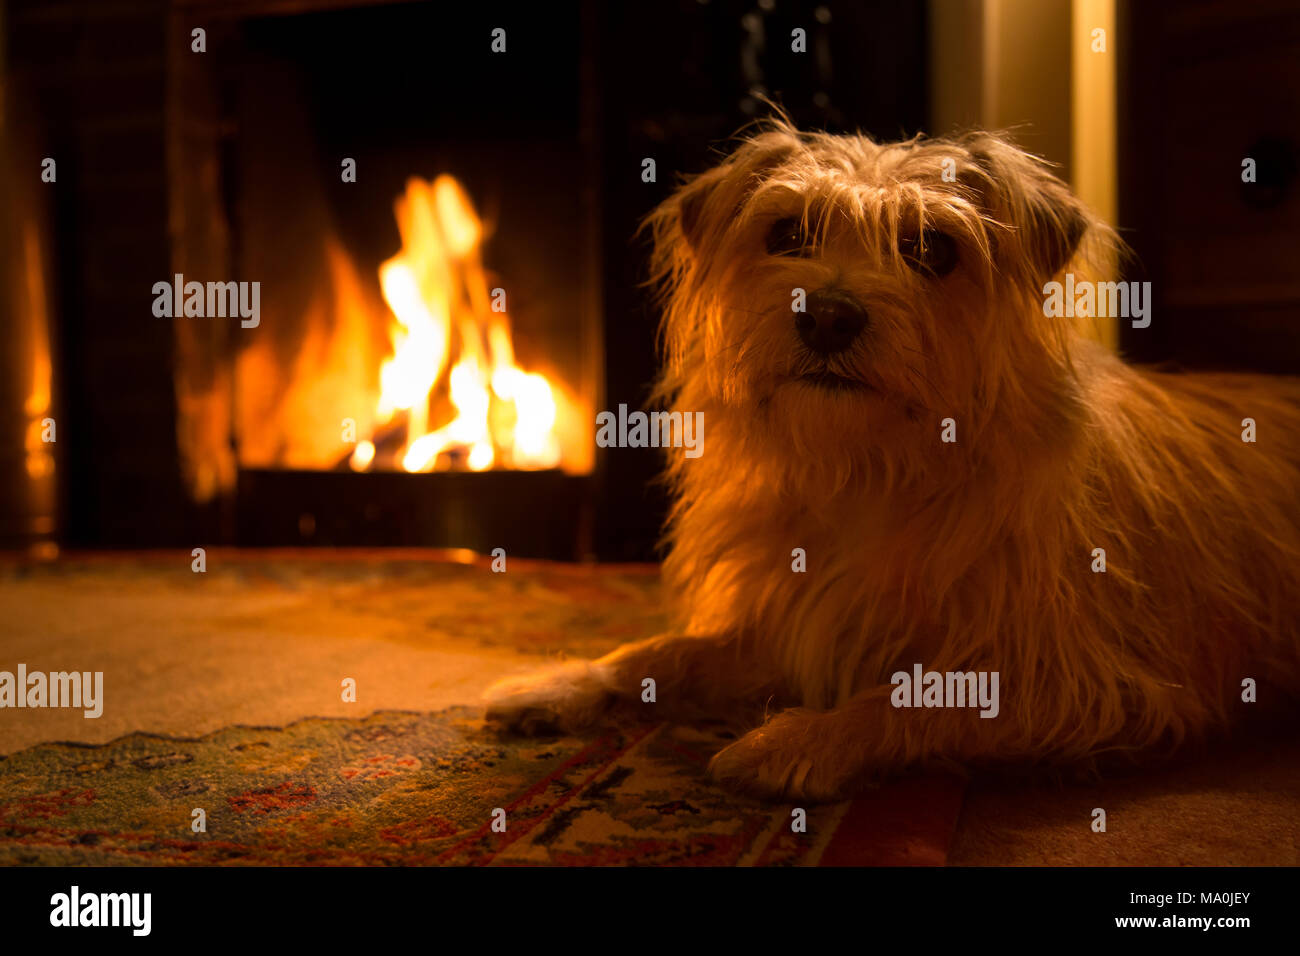 Norfolk terrier by open fire Stock Photo